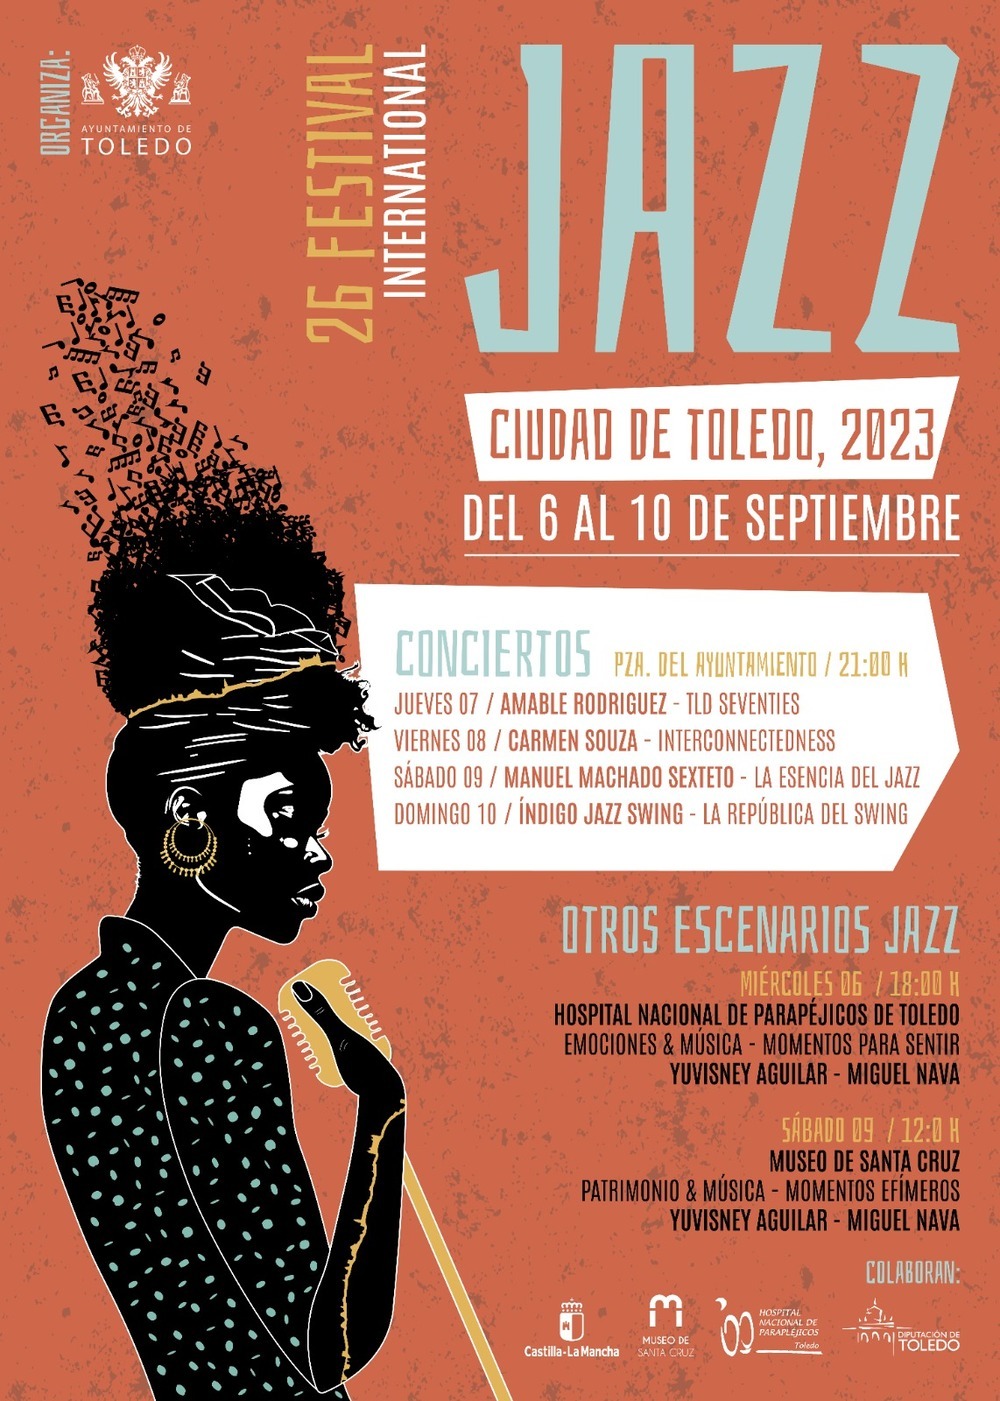 Toledo será Jazz del 6 al 10 de septiembre